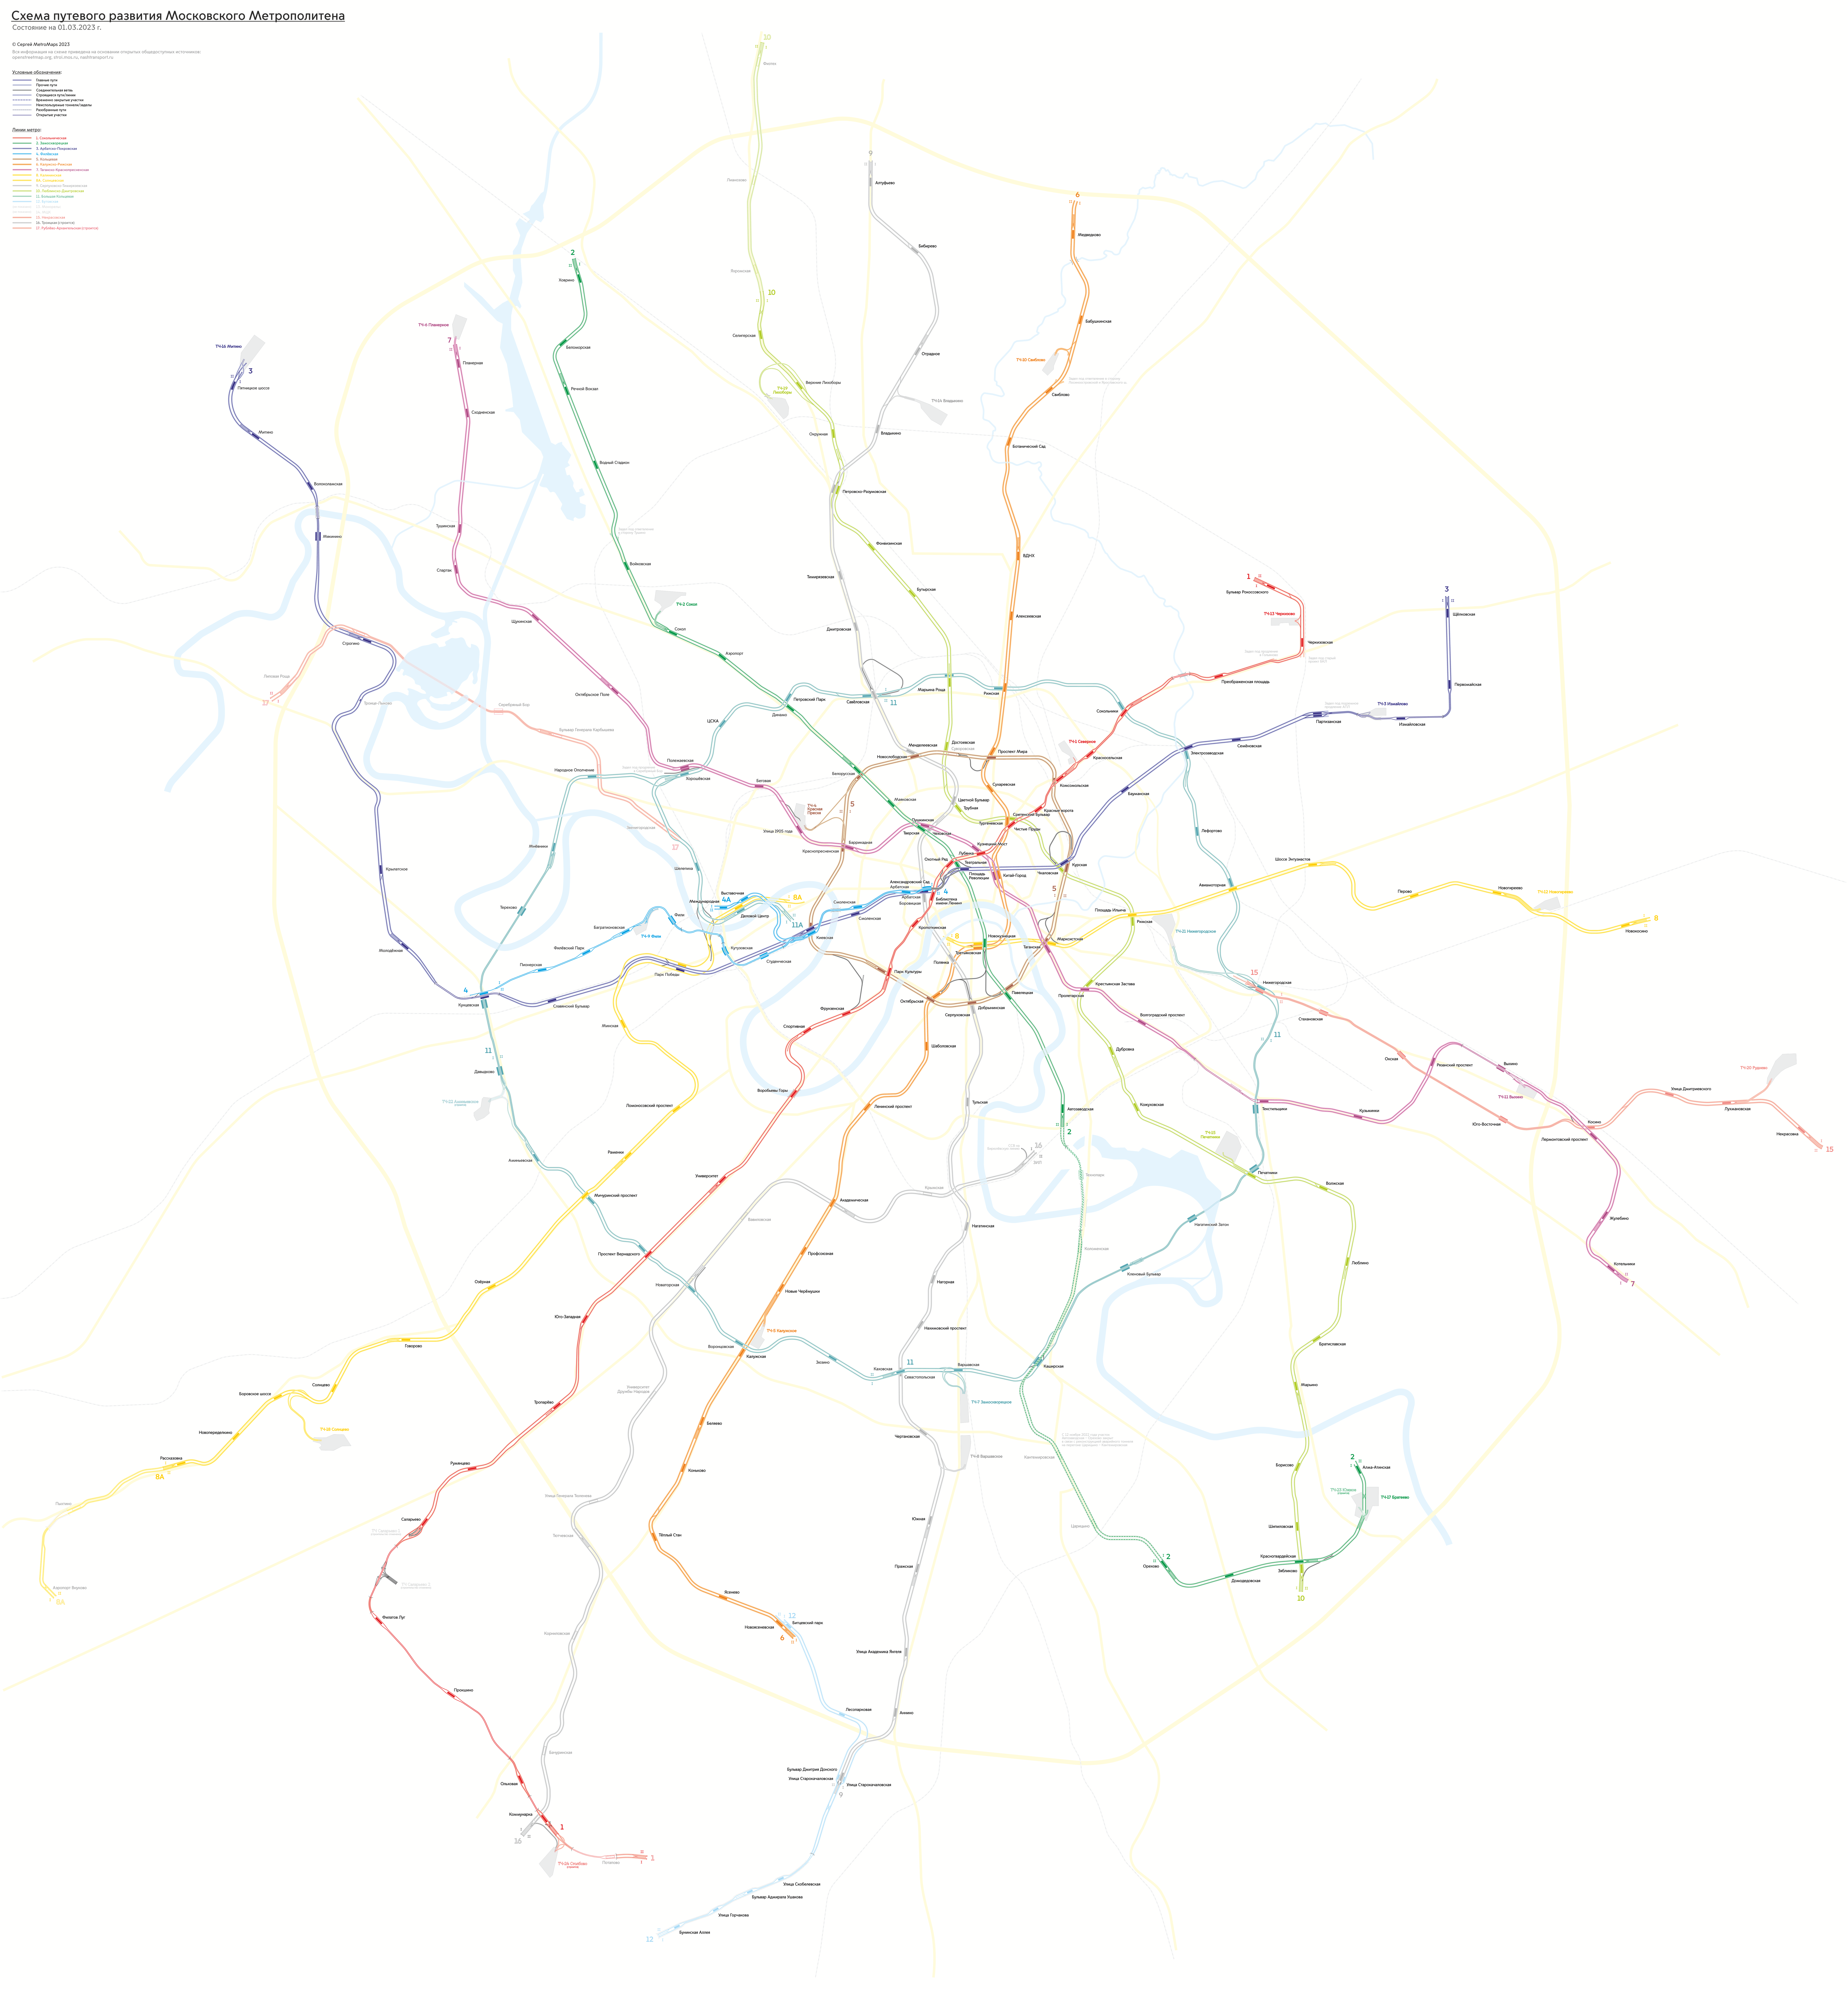 莫斯科 — Metro — Maps